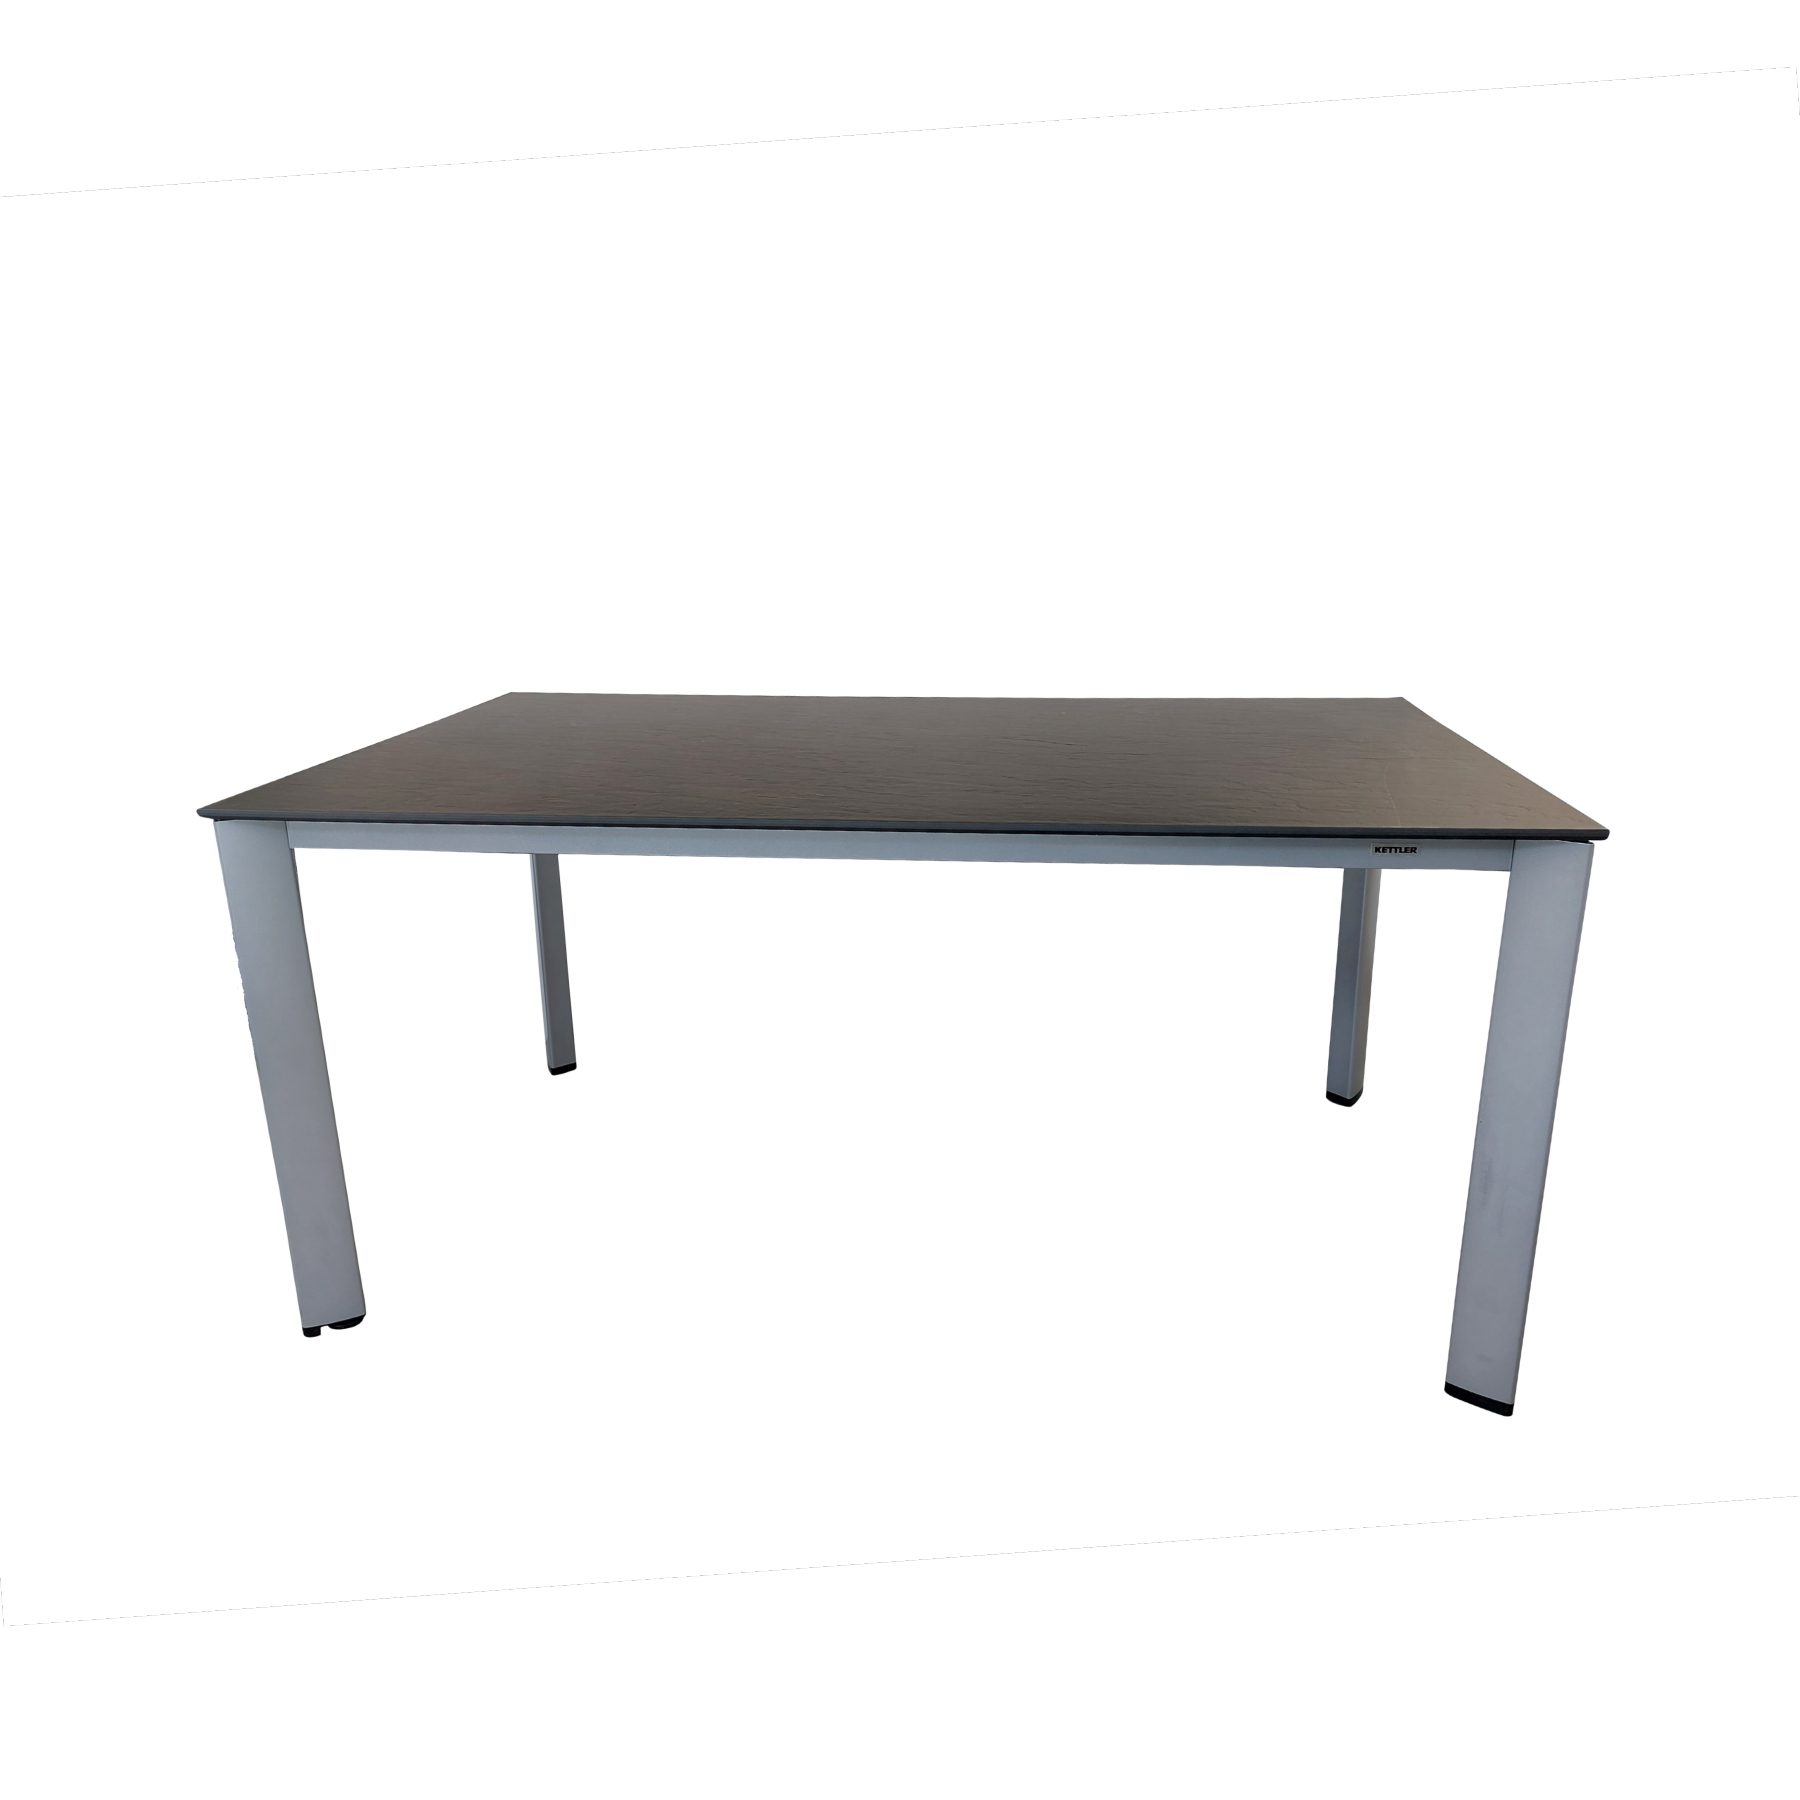 Kettler "Edge" Tischsystem Gartentisch, Gestell Aluminium silber, Tischplatte Kettalux-Plus anthrazit (Schieferoptik), 160x95 cm